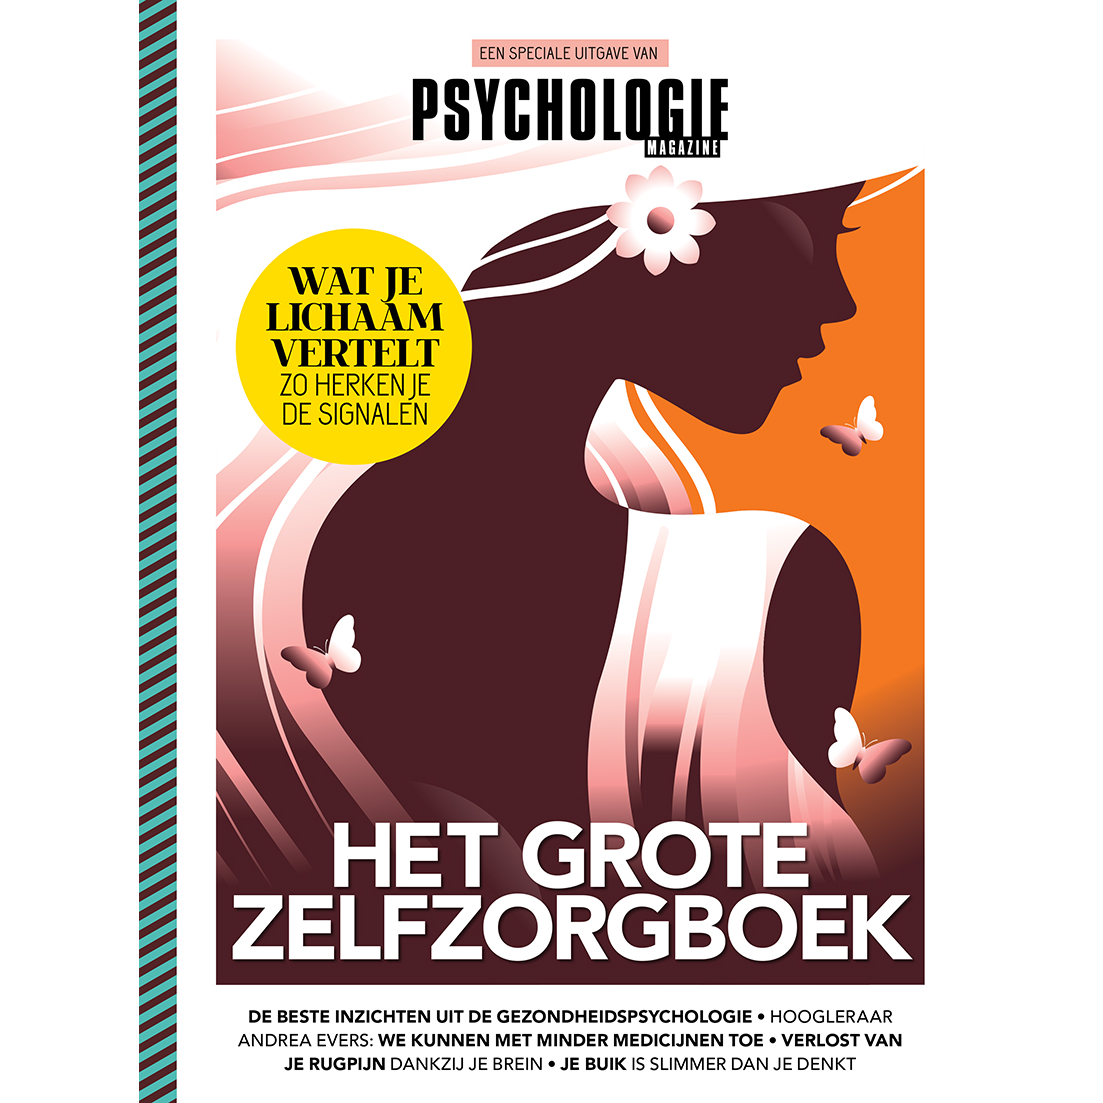 https://www.psychologiemagazine.nl/wp-content/uploads/2020/03/Zelfzorgboek-cover.png